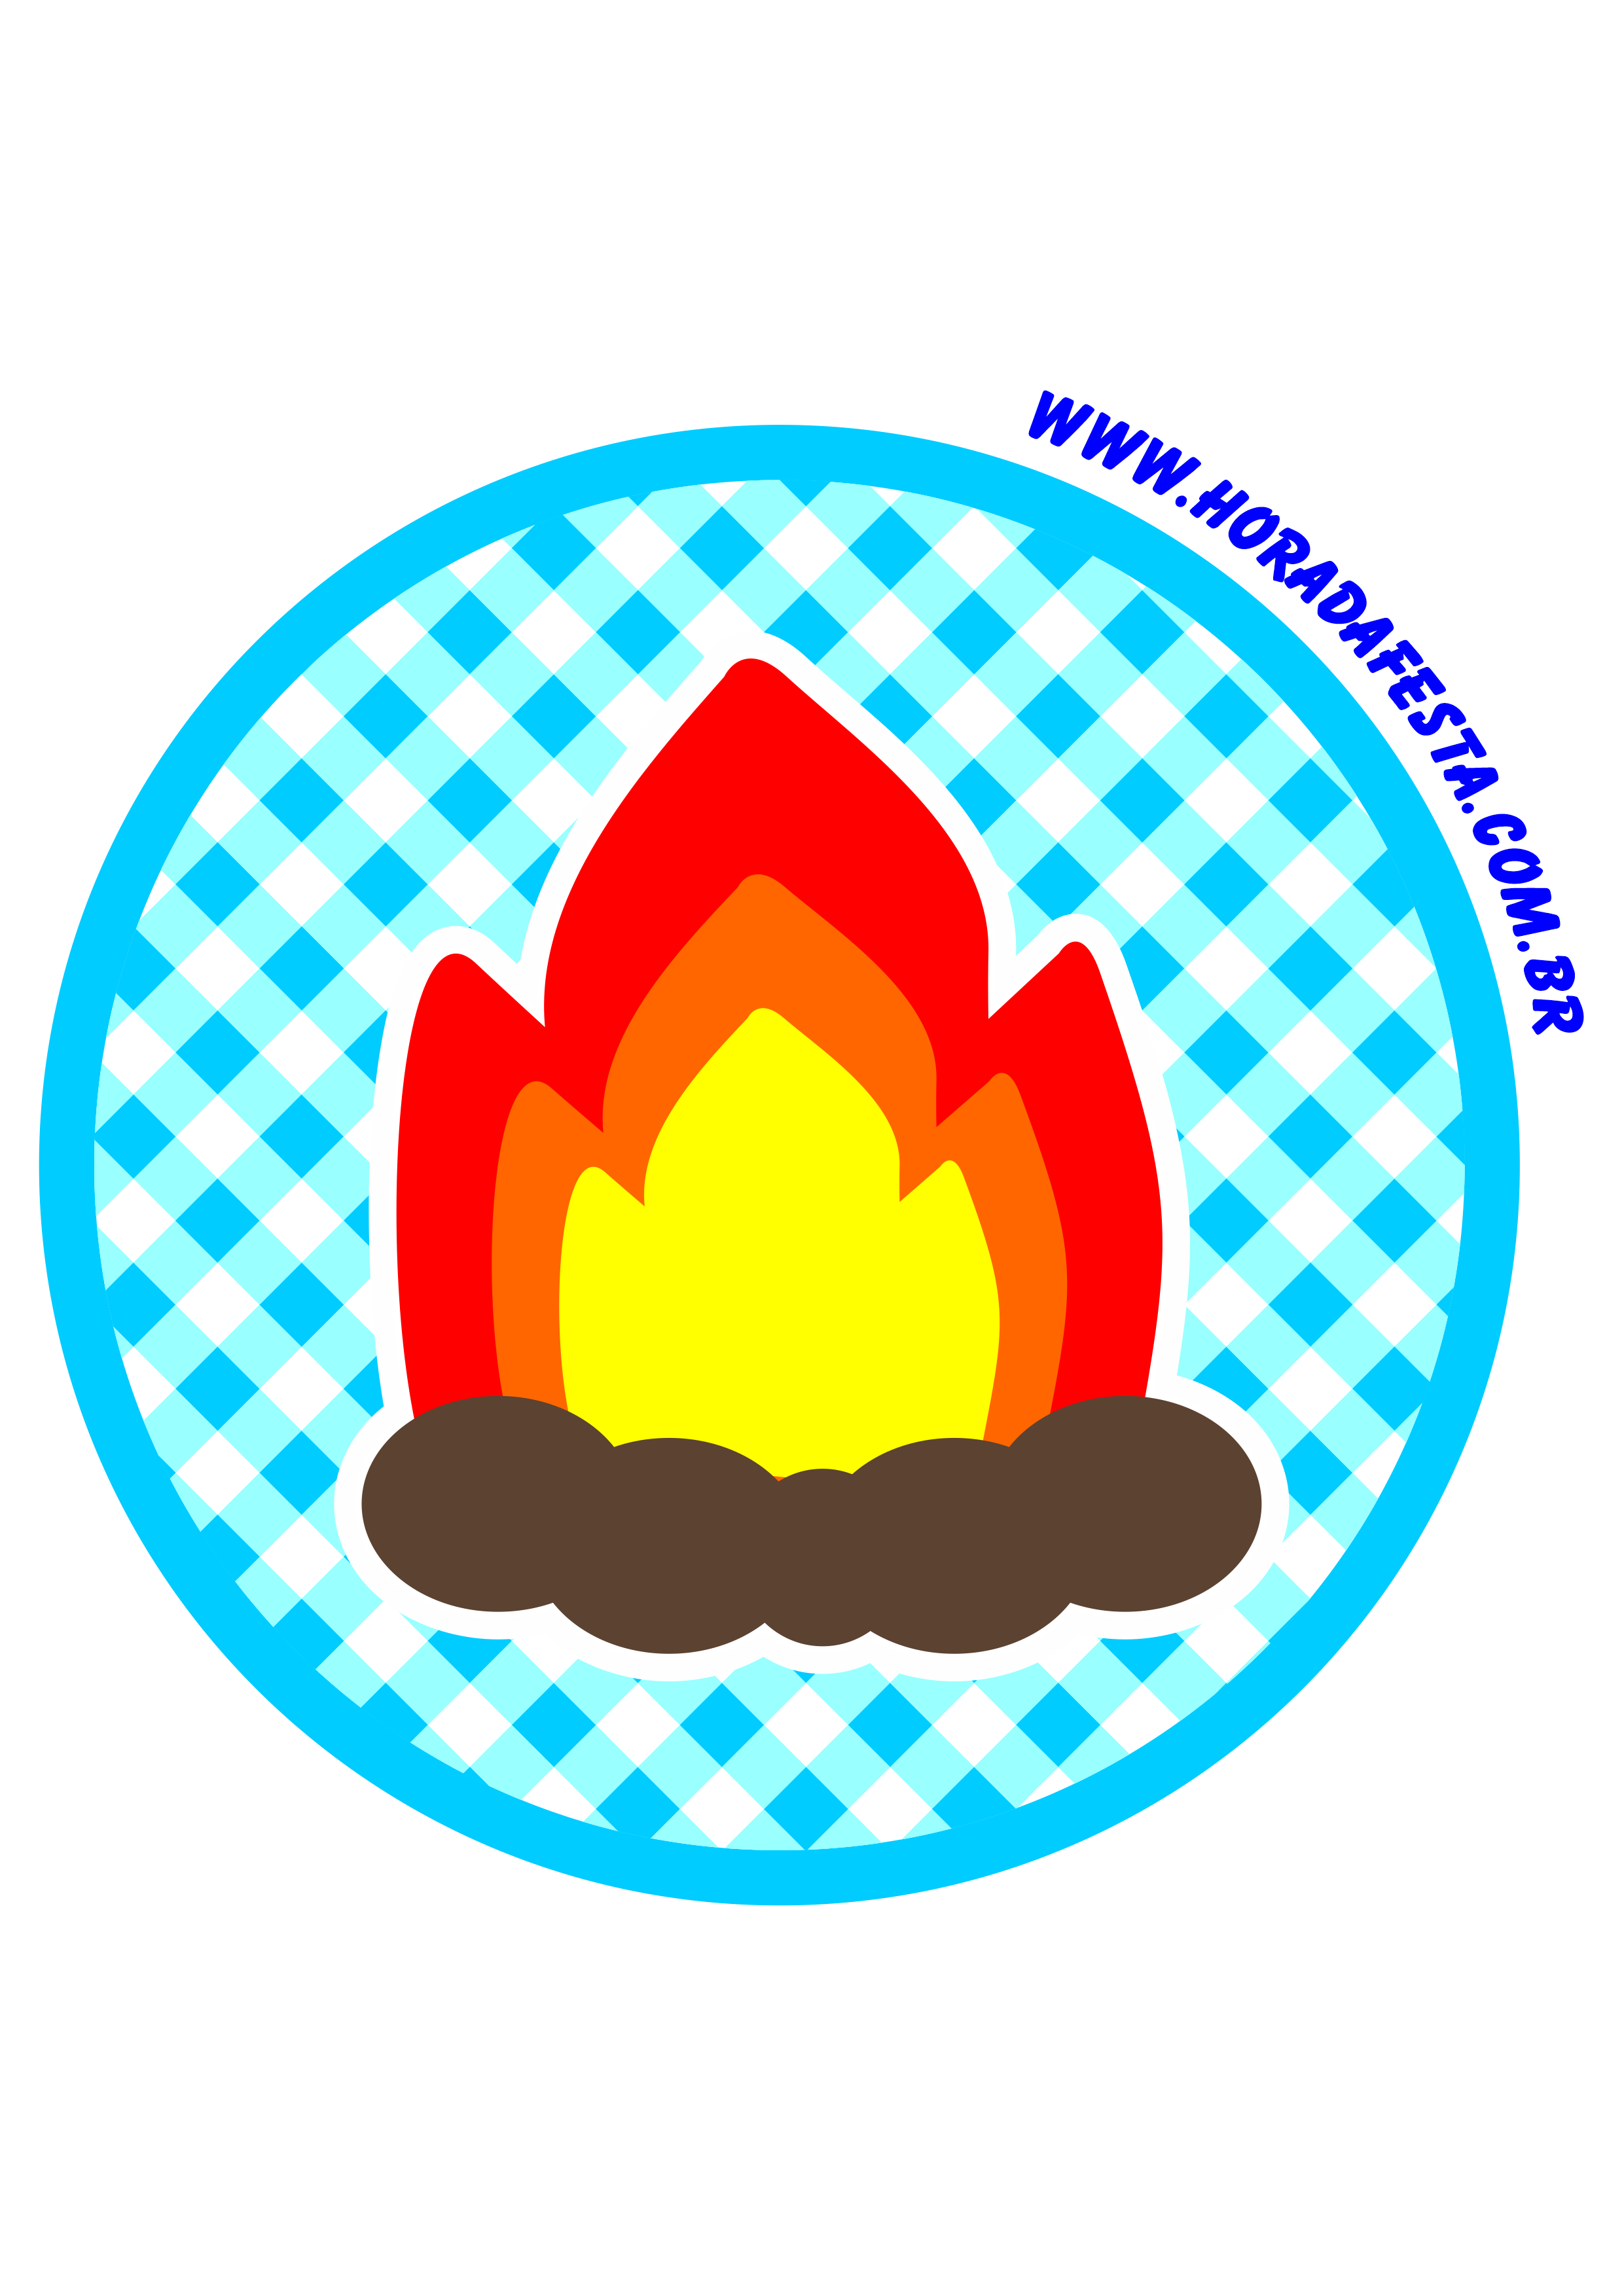 Festa junina logo painel redondo tag sticker adesivo azul fogueira de são joão png